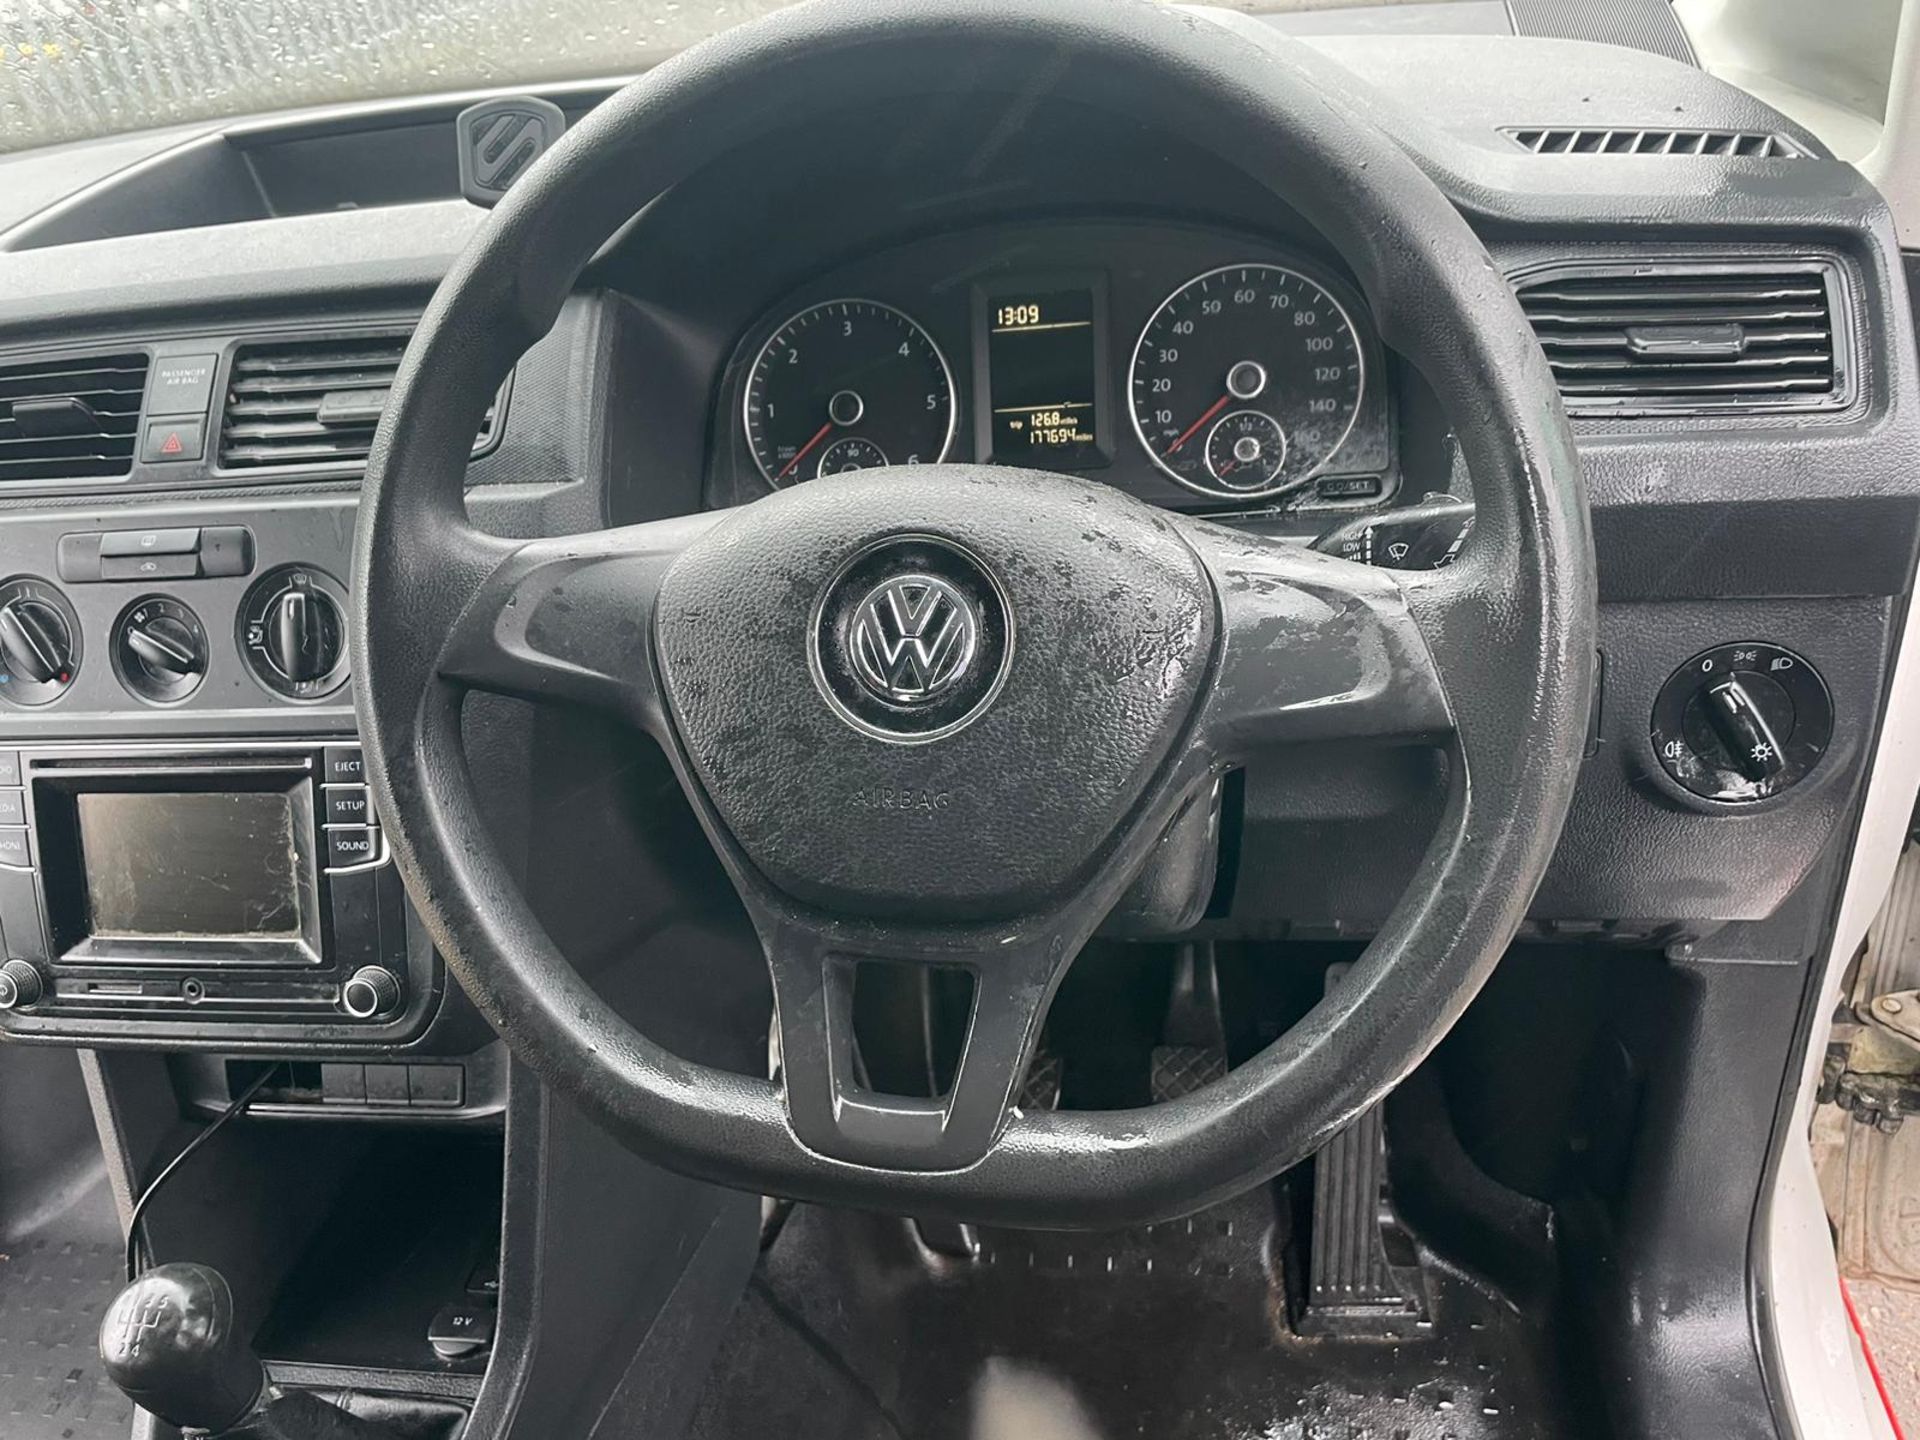 ** ON SALE ** Volkswagen Caddy C20 1.6 TDI Startline 75 H1L1 2016 '16 Reg' - Panek Van - No Vat - Image 20 of 26